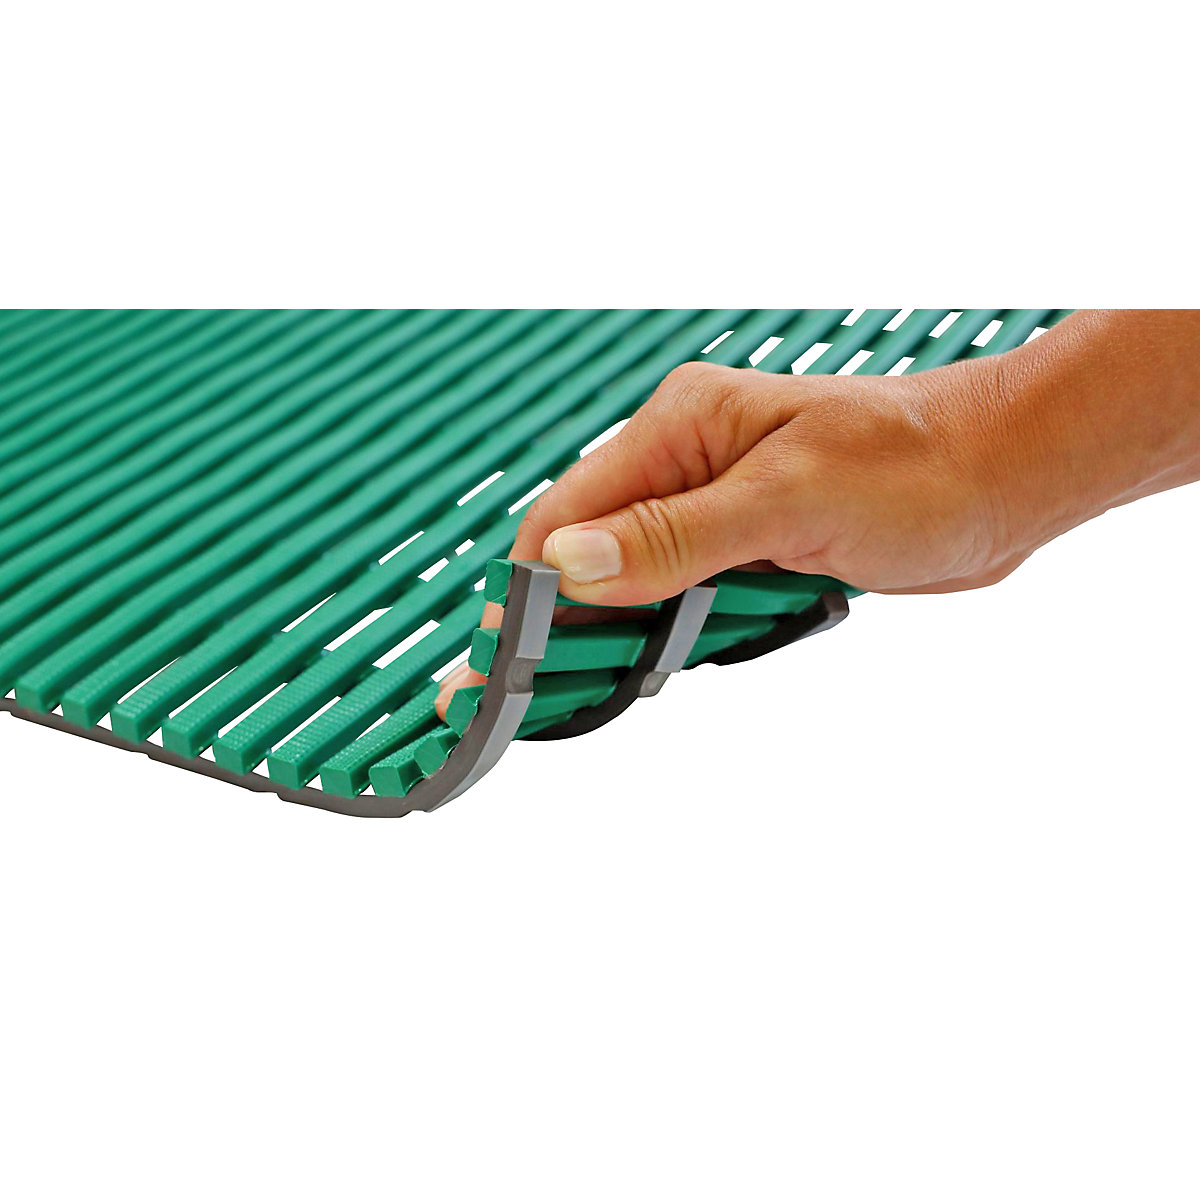 Wet room mat, anti-bacterial, per metre, green, width 600 mm